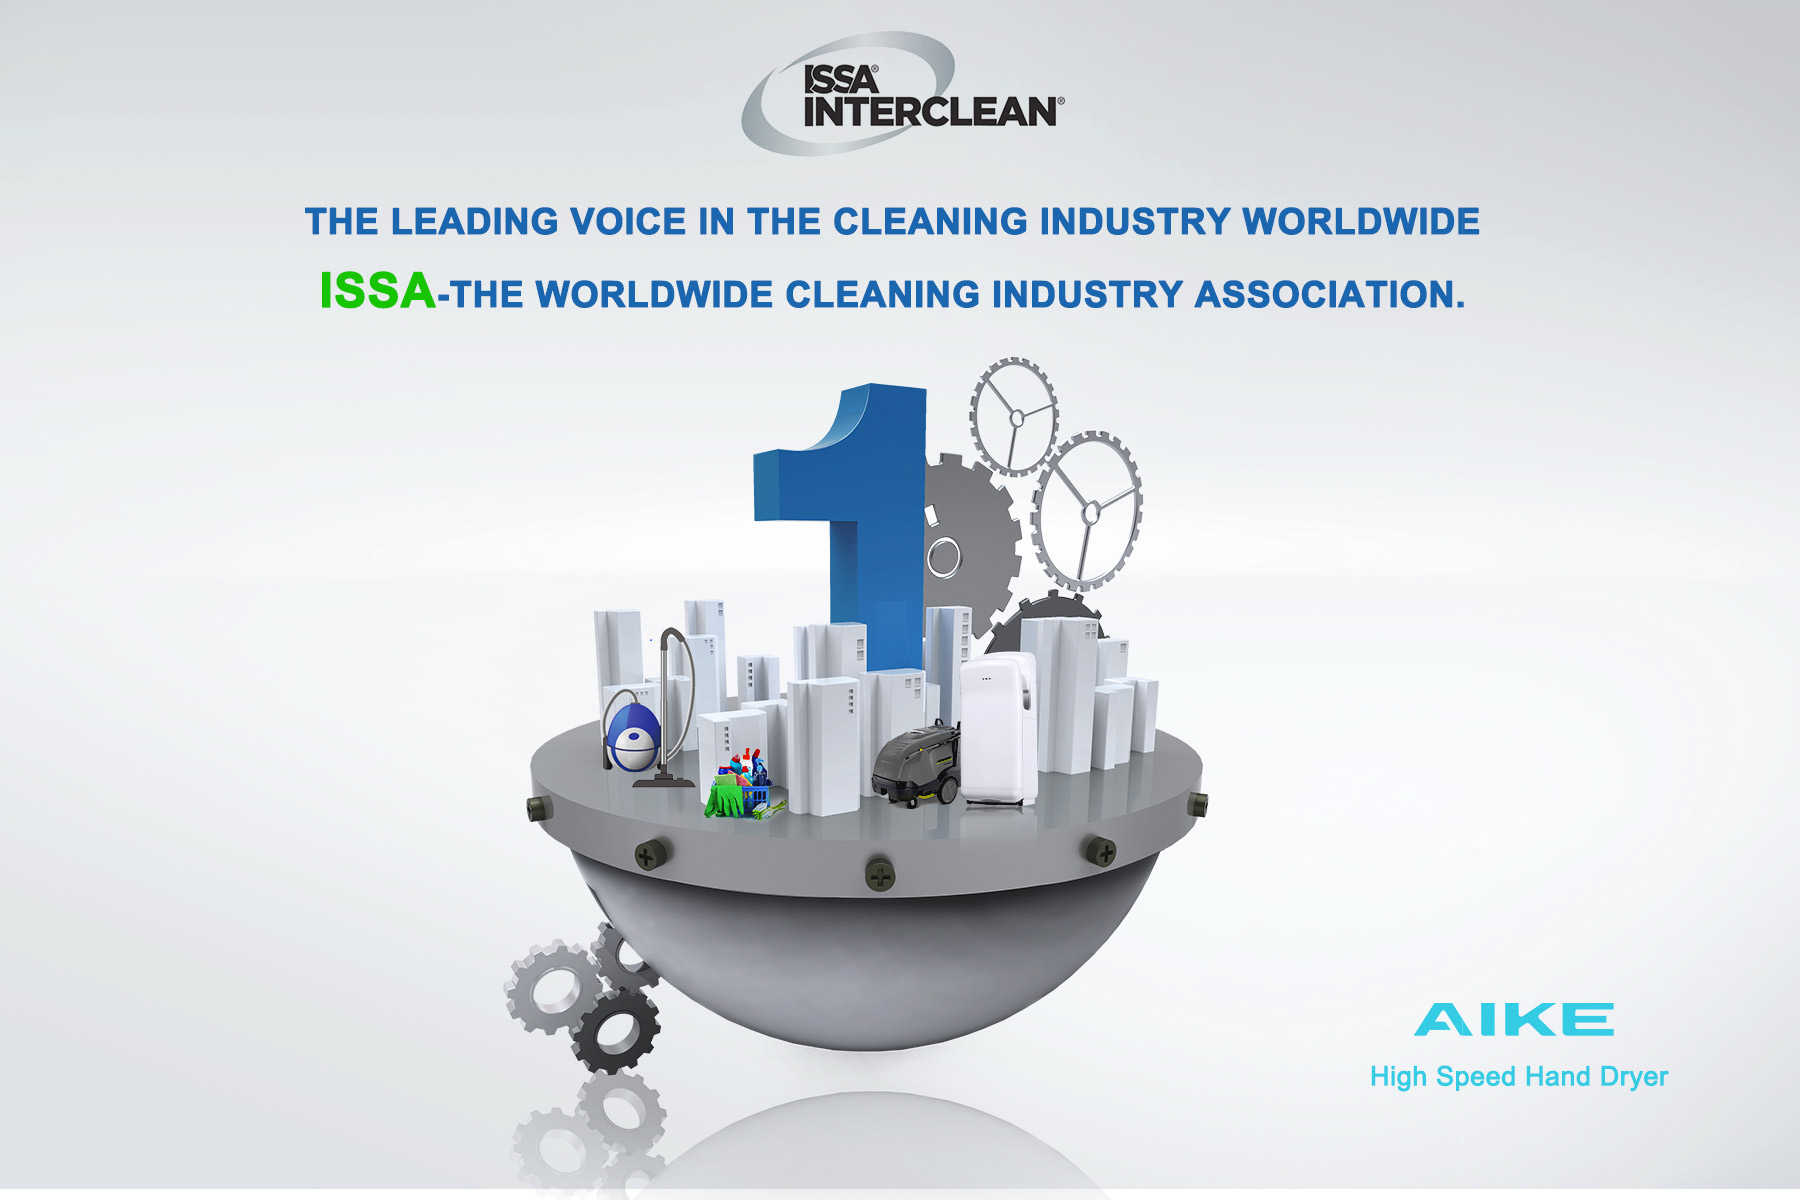 La principale voix de l'industrie du nettoyage dans le monde: AISS - The Worldwide Cleaning Industry Association.